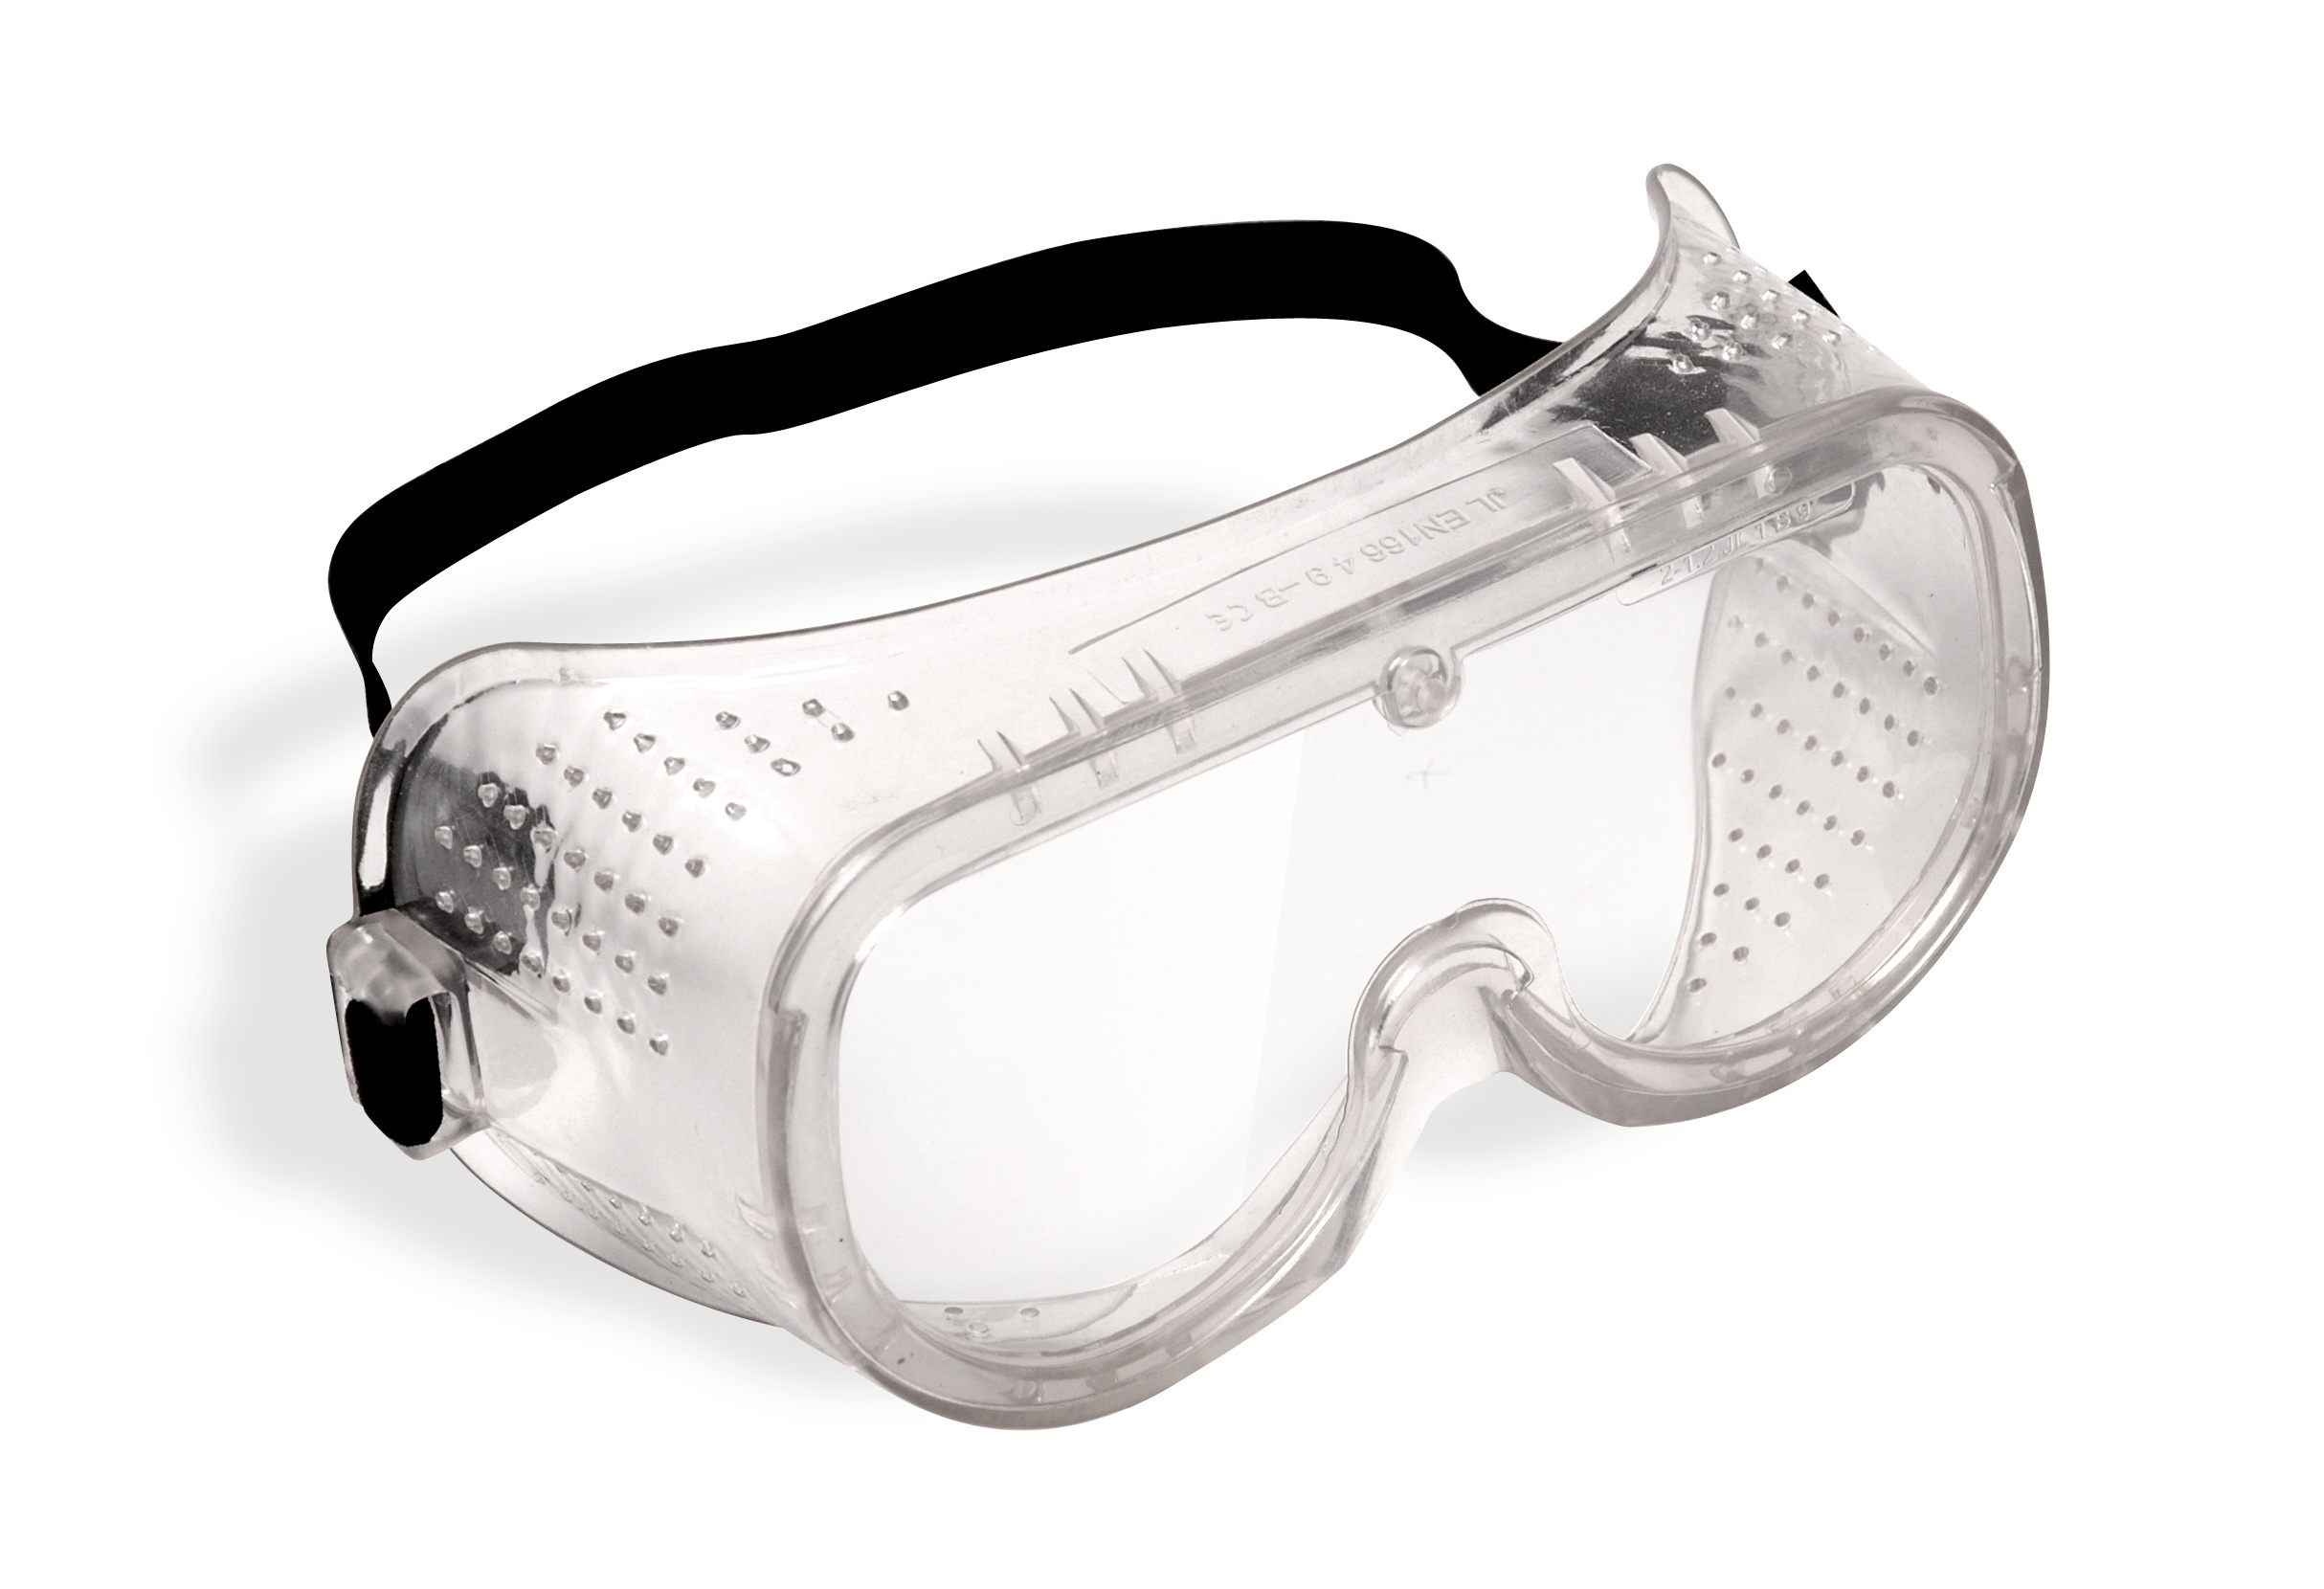 Уф очки защитные. Jsg1011-c Chem Vision очки защитные закрытого типа. Очки защитные "Исток" закрытого типа с прямой вентиляцией. Очки защитные с прямой вентиляцией р2 ПВ 964738. Очки защитные с прямой вентиляцией 89161.